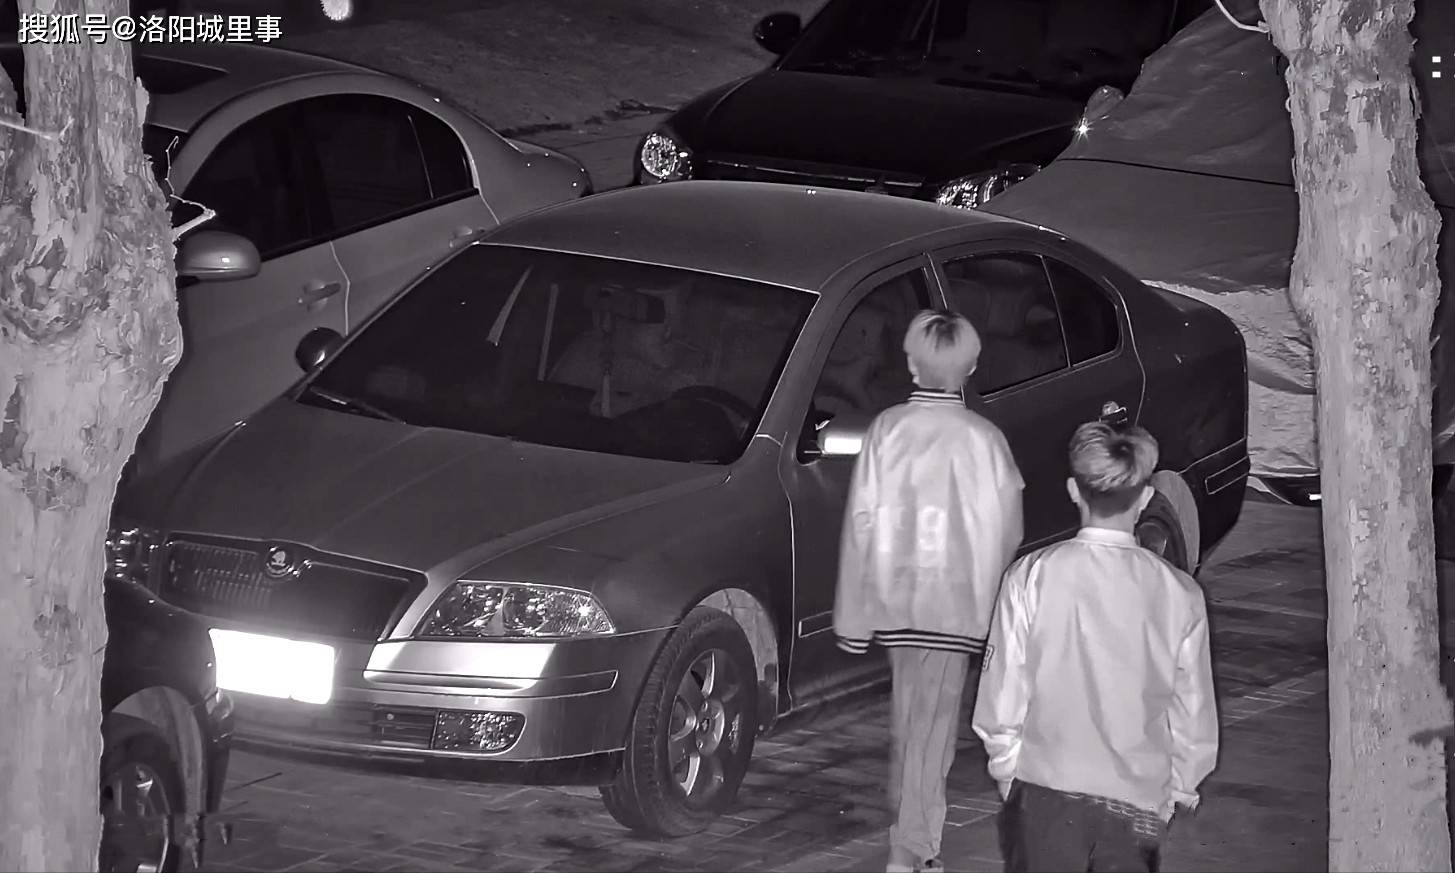 原创洛阳警方破获拉车门盗窃案 提醒:你的车门锁好了吗?